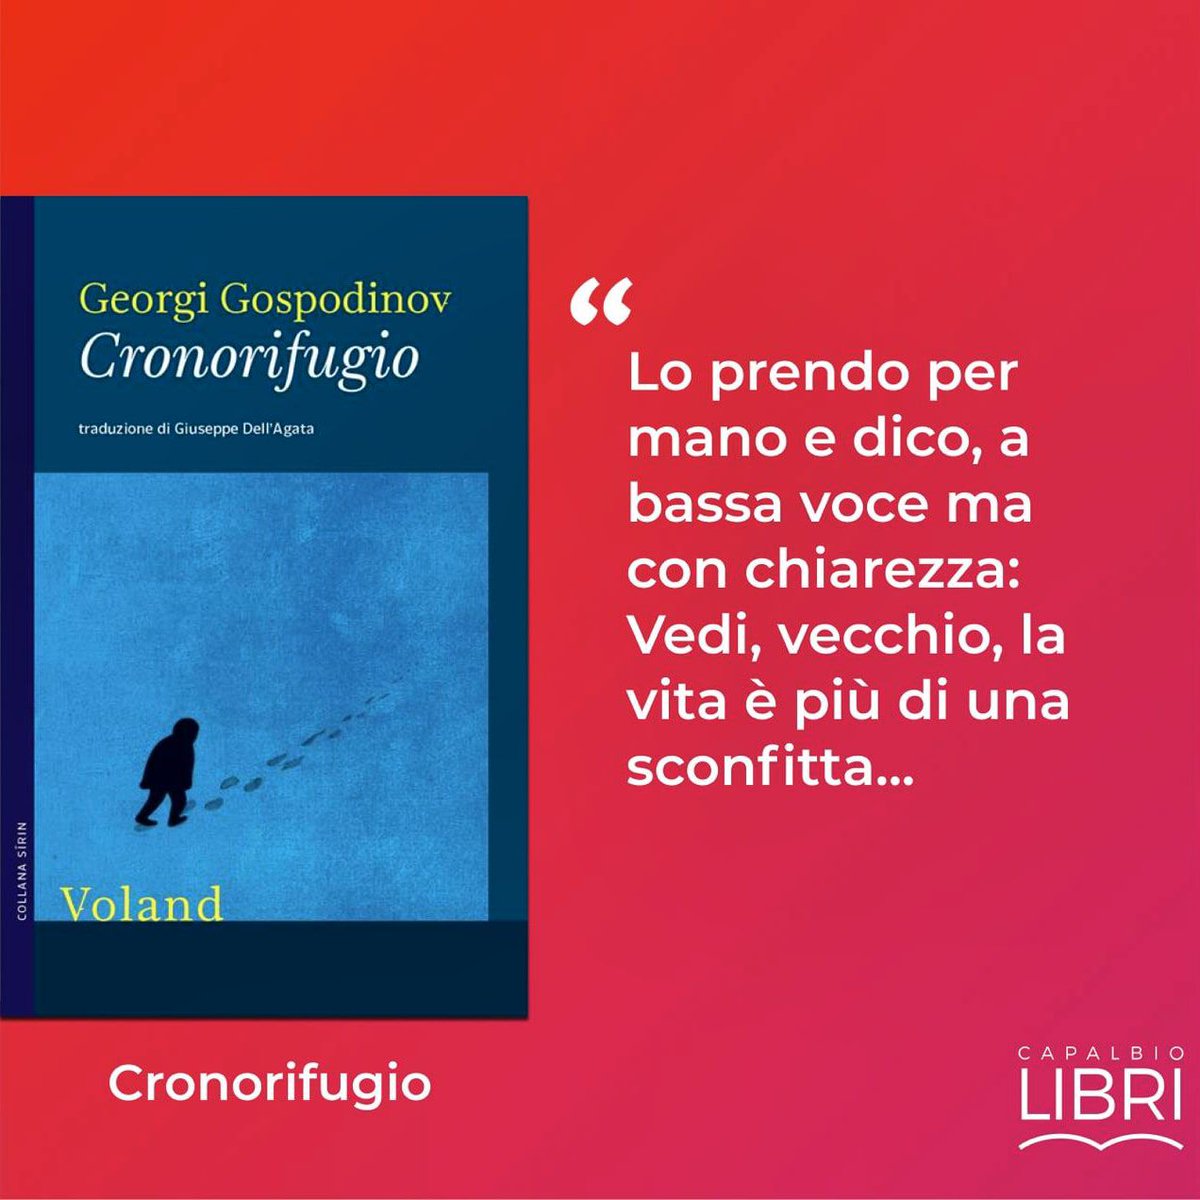 Il romanzo 'Cronorifugio' di Georgi Gospodinov (@VolandEdizioni) si aggiudica l'ottava edizione del #PremioStregaEuropeo.👏
#libri #books